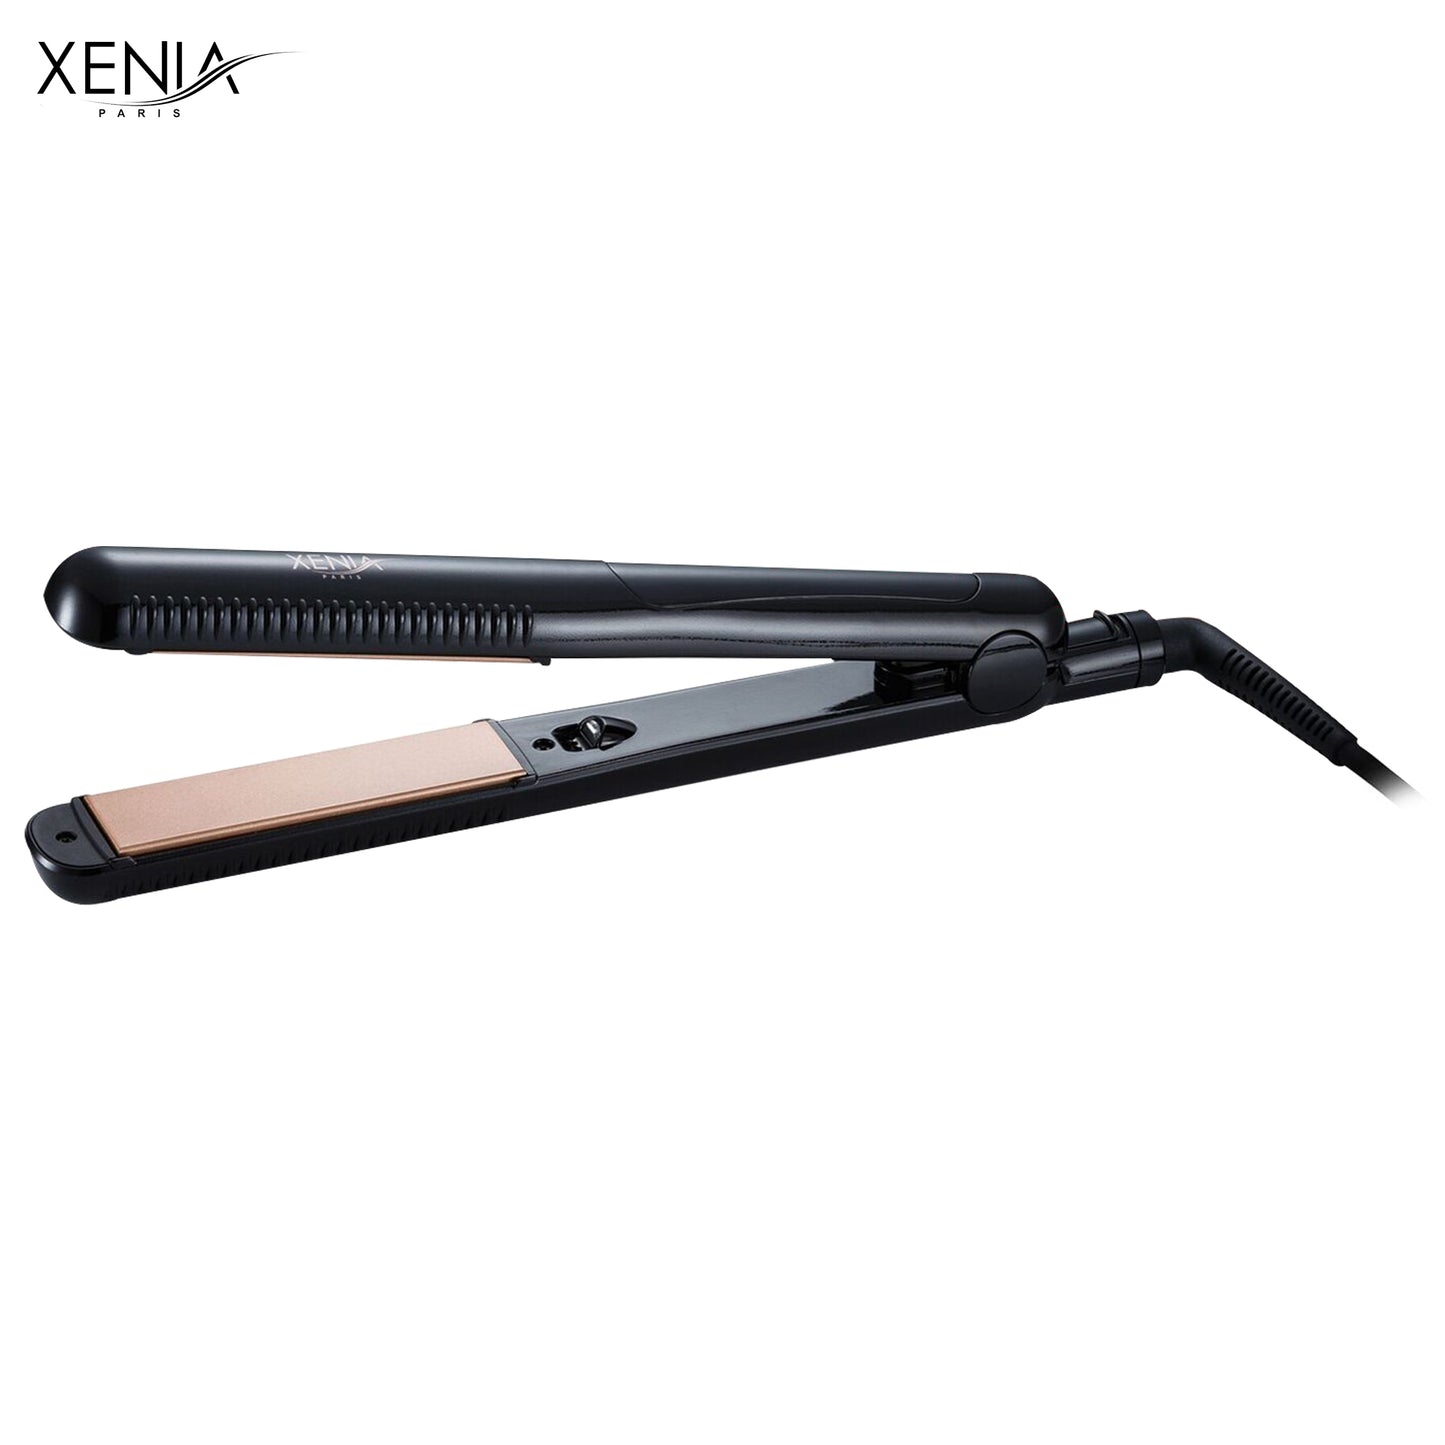 Xenia Paris TO-291224: Infrared Ray Flat Iron & Hair Straightener